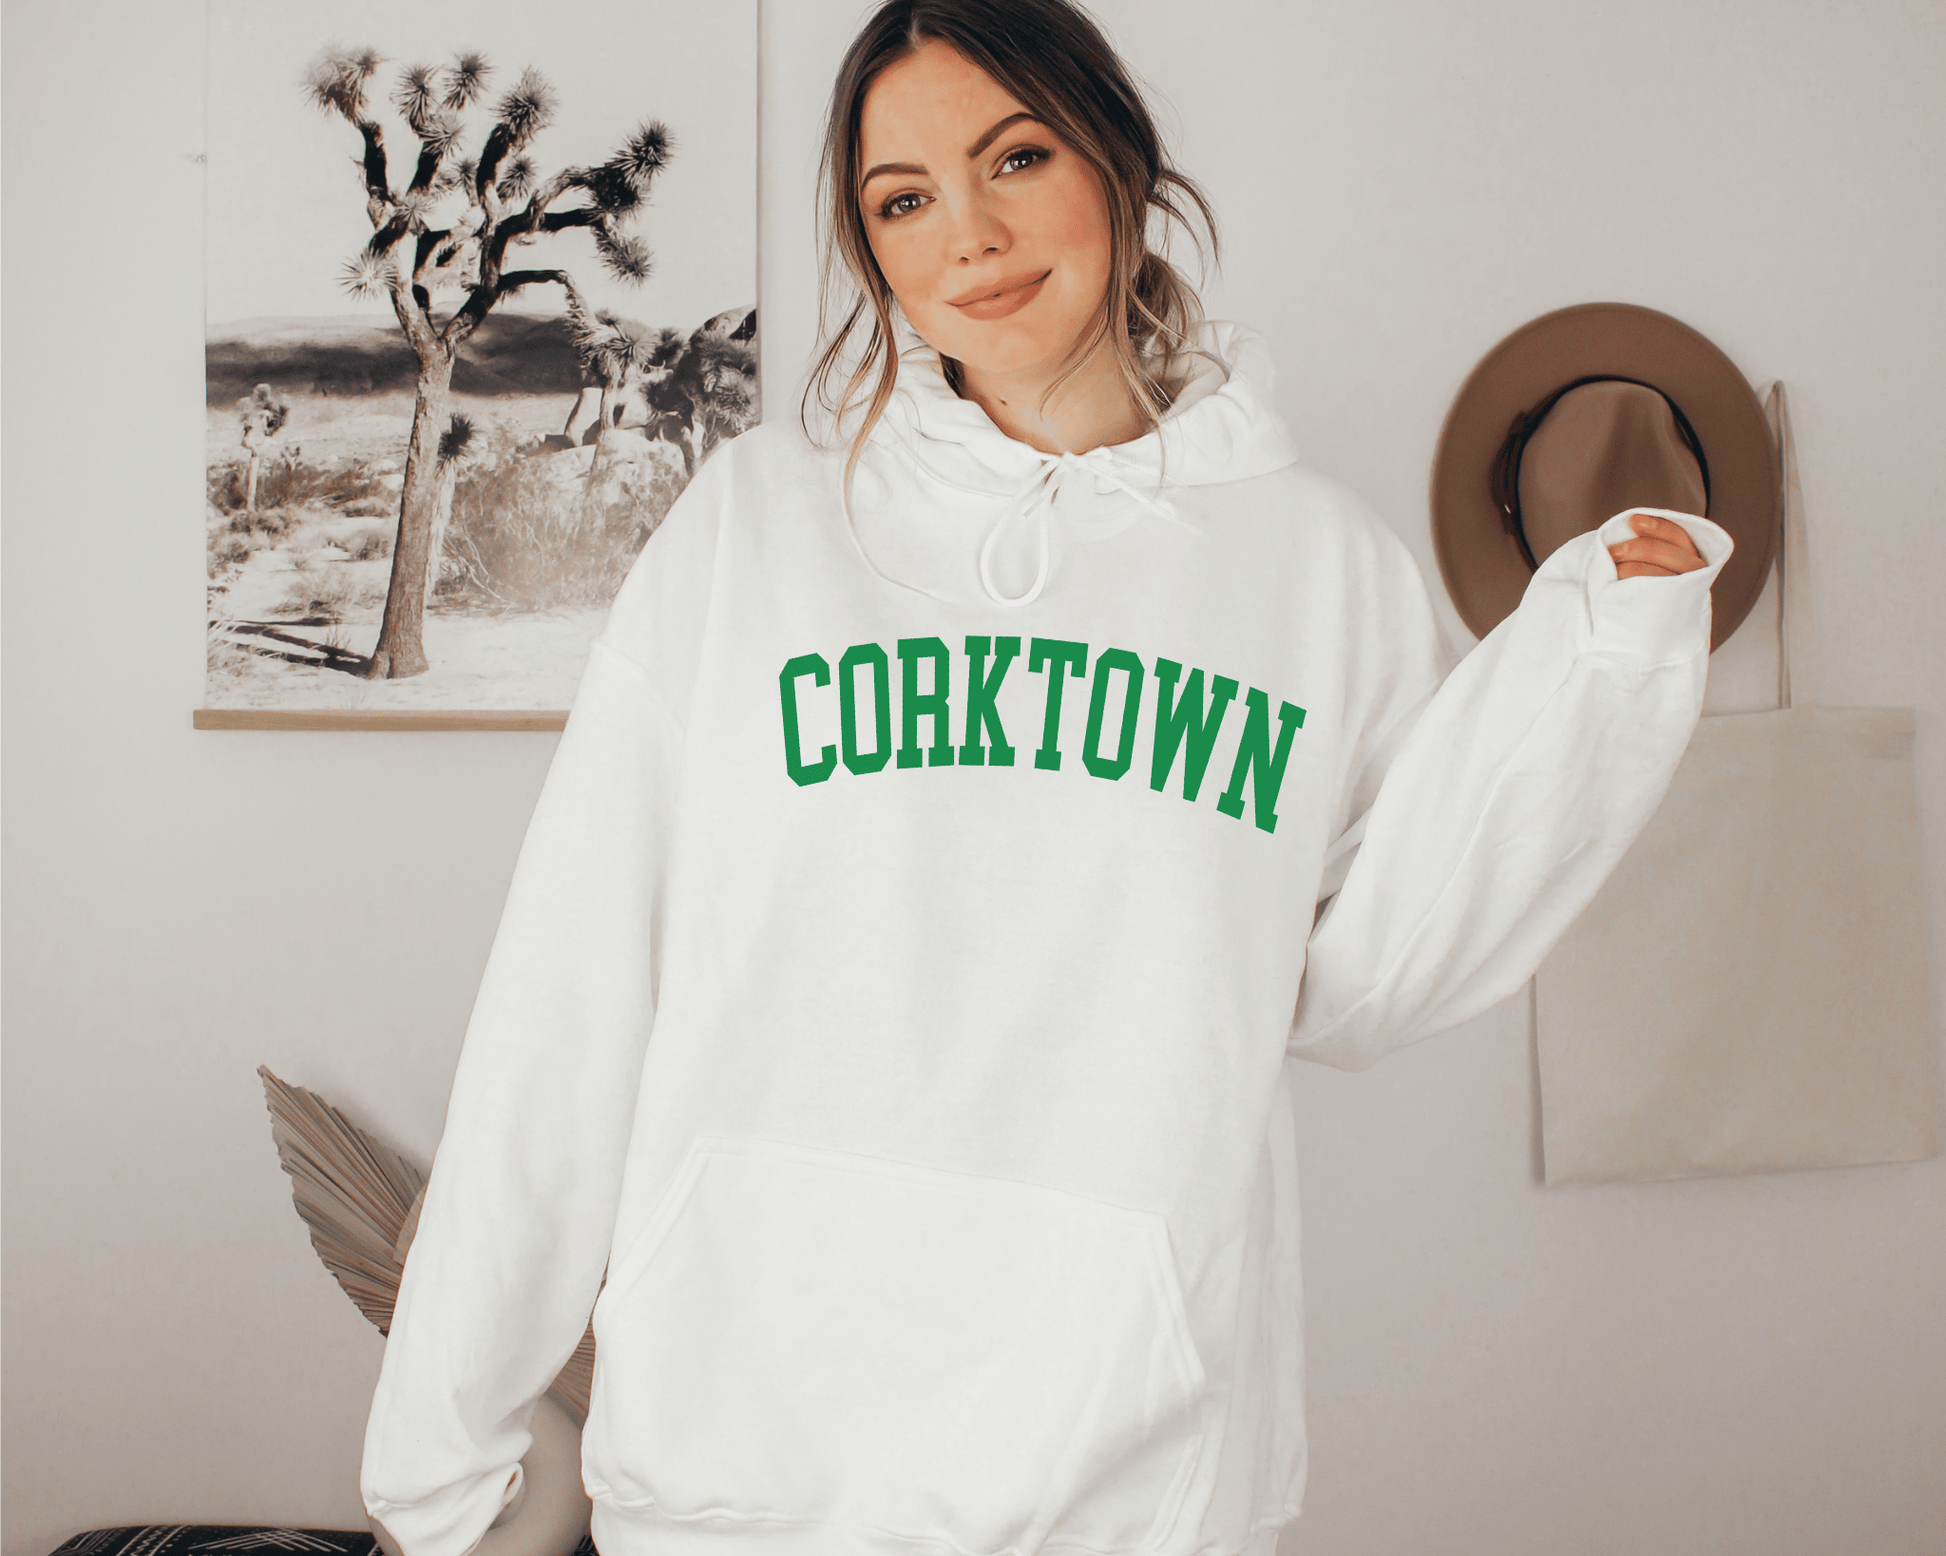 Corktown Hoodie in White